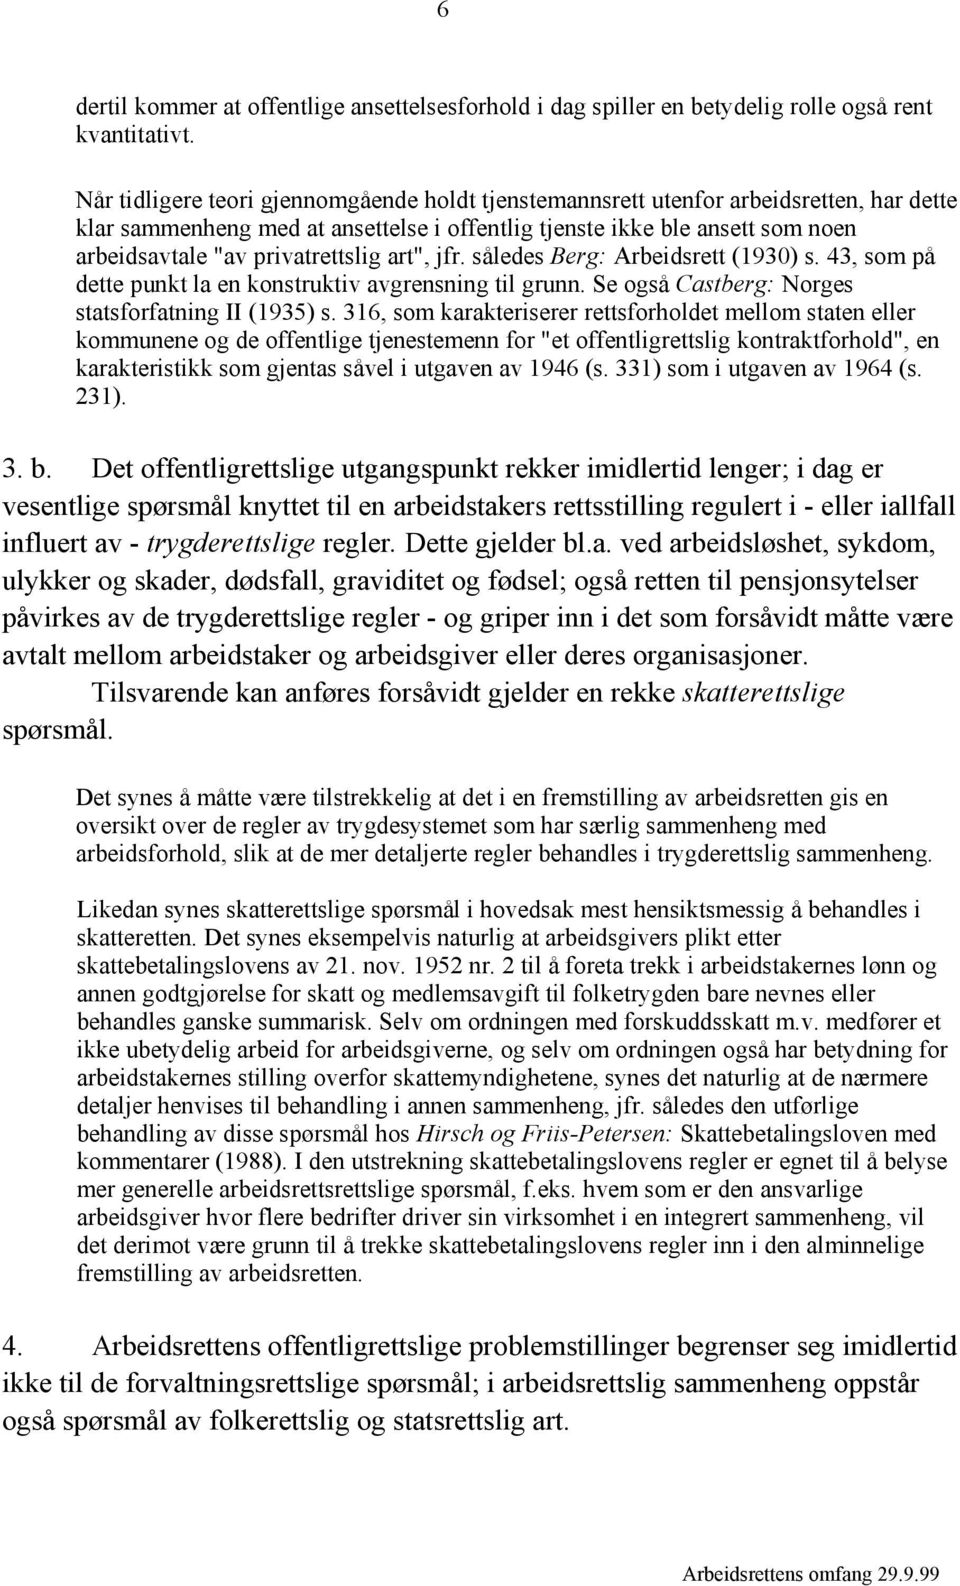 privatrettslig art", jfr. således Berg: Arbeidsrett (1930) s. 43, som på dette punkt la en konstruktiv avgrensning til grunn. Se også Castberg: Norges statsforfatning II (1935) s.